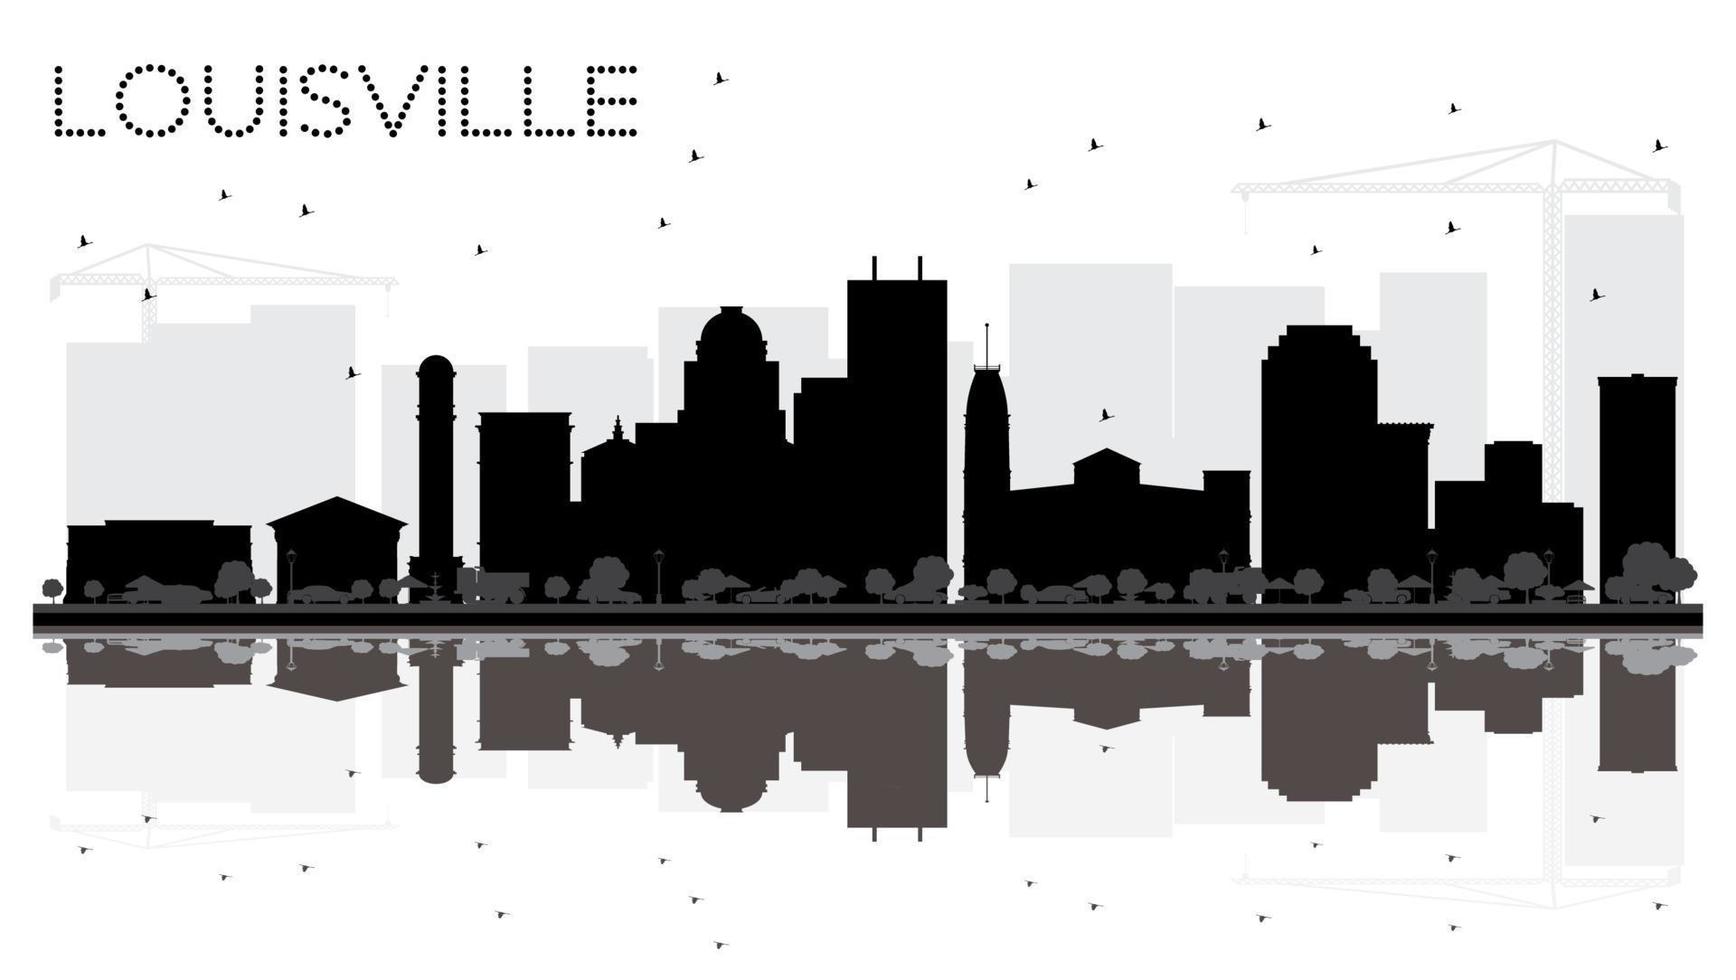 Louisville Kentucky Verenigde Staten van Amerika stad horizon zwart en wit silhouet met reflecties. vector